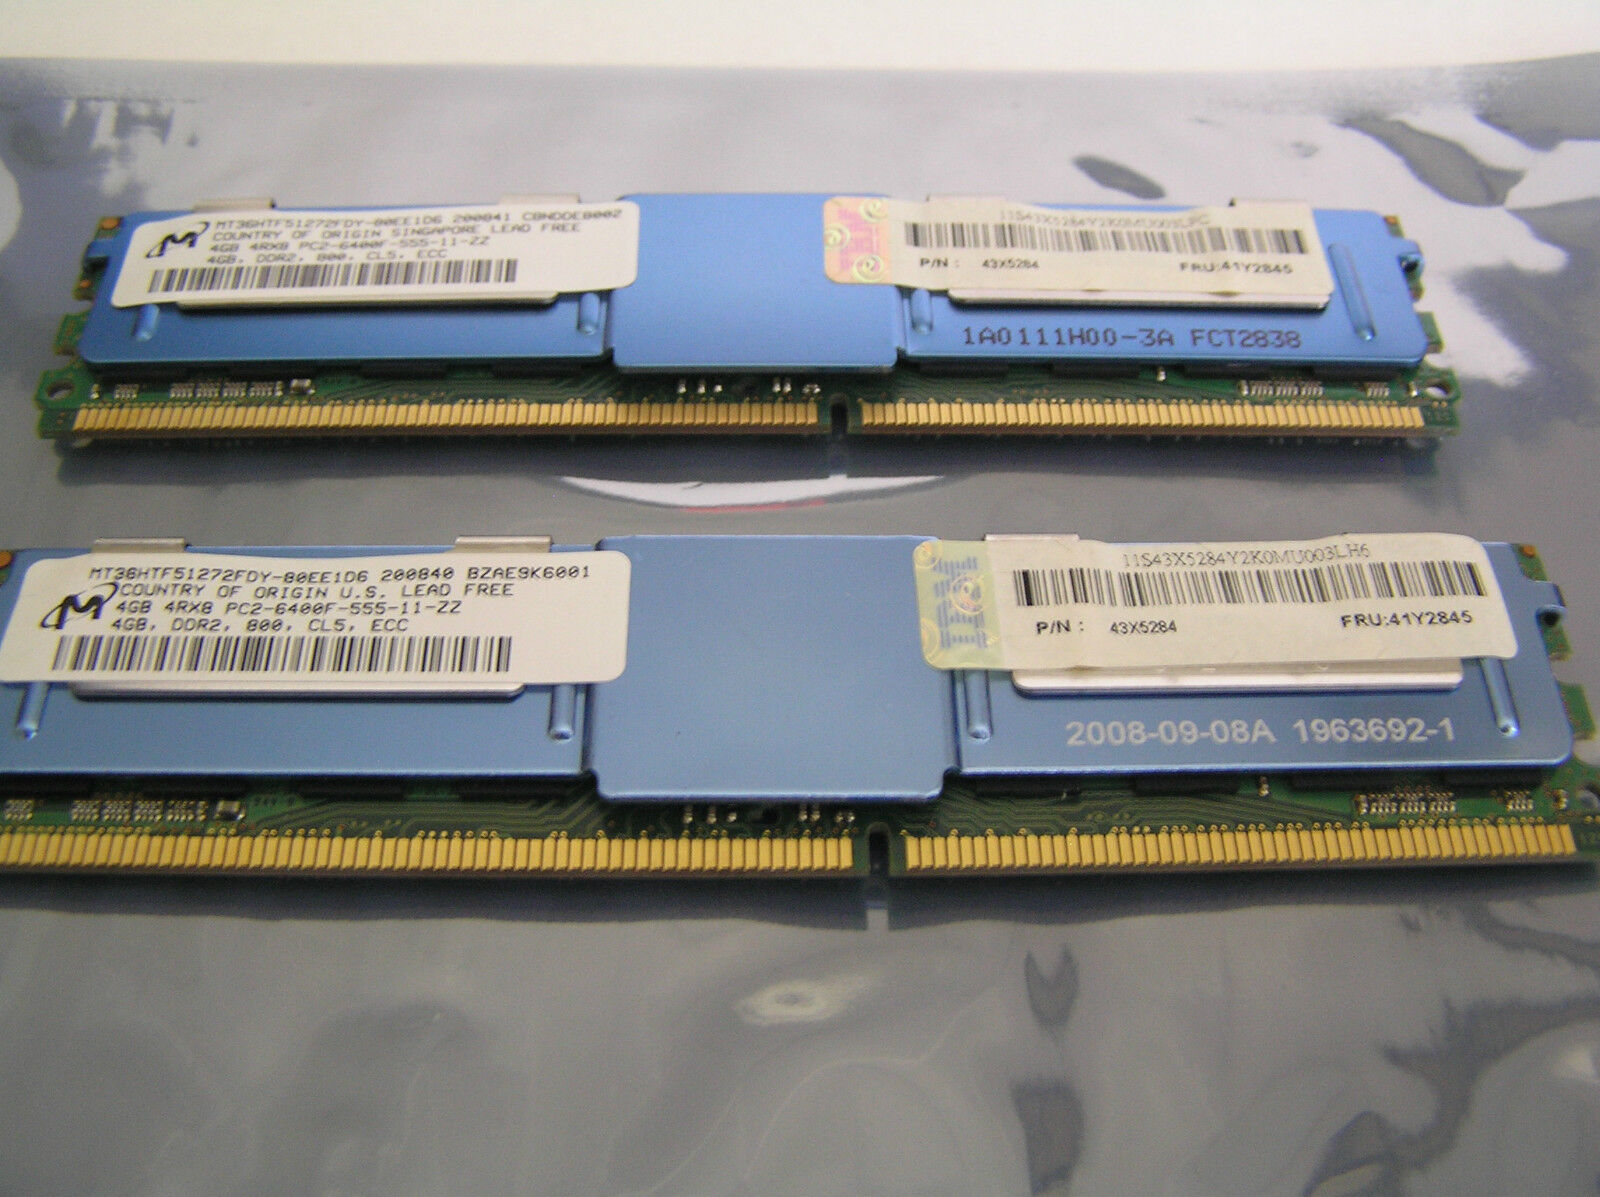  Micron 8GB (4GBx2) MT36HTF51272FDY PC2-6400F 800Mhz DDR2 FRU:41Y2845 Server RAM